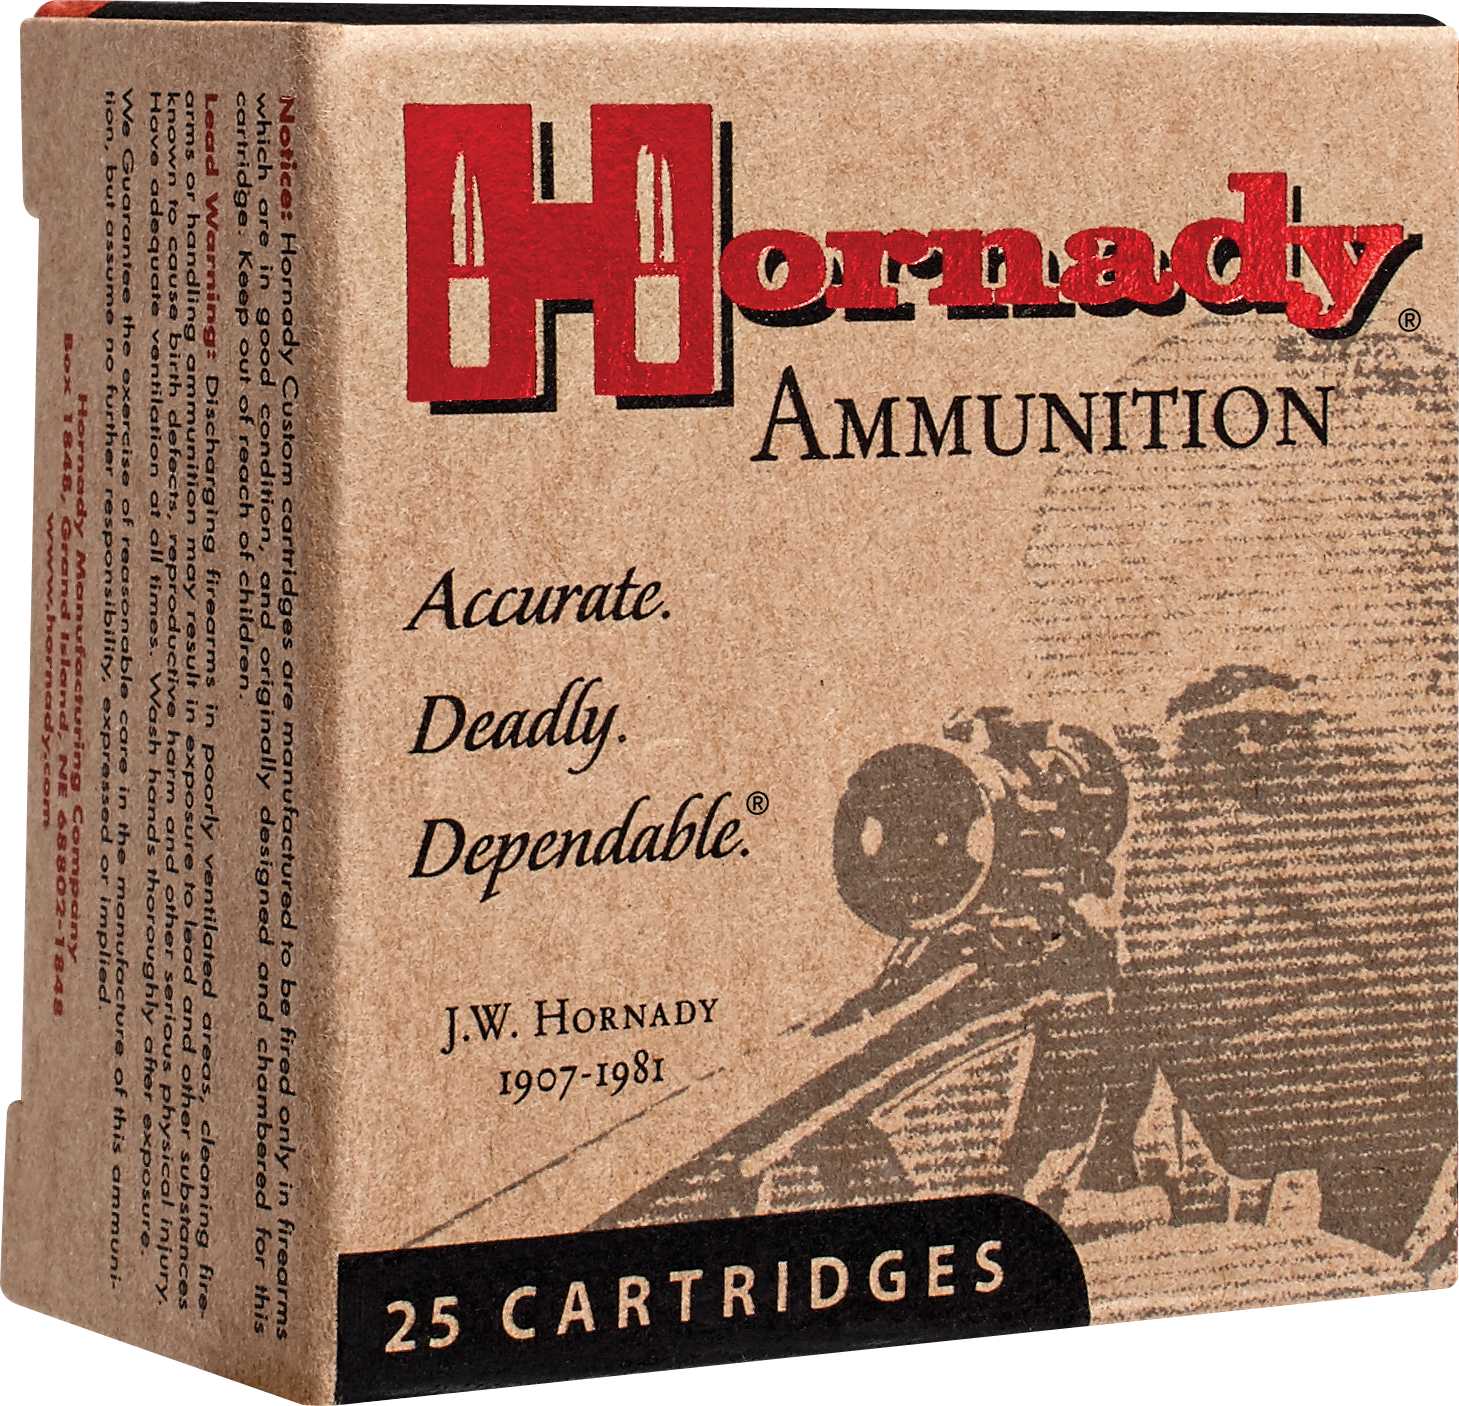 9mm Luger 25 Rounds Ammunition Hornady 124 Grain Hollow Point